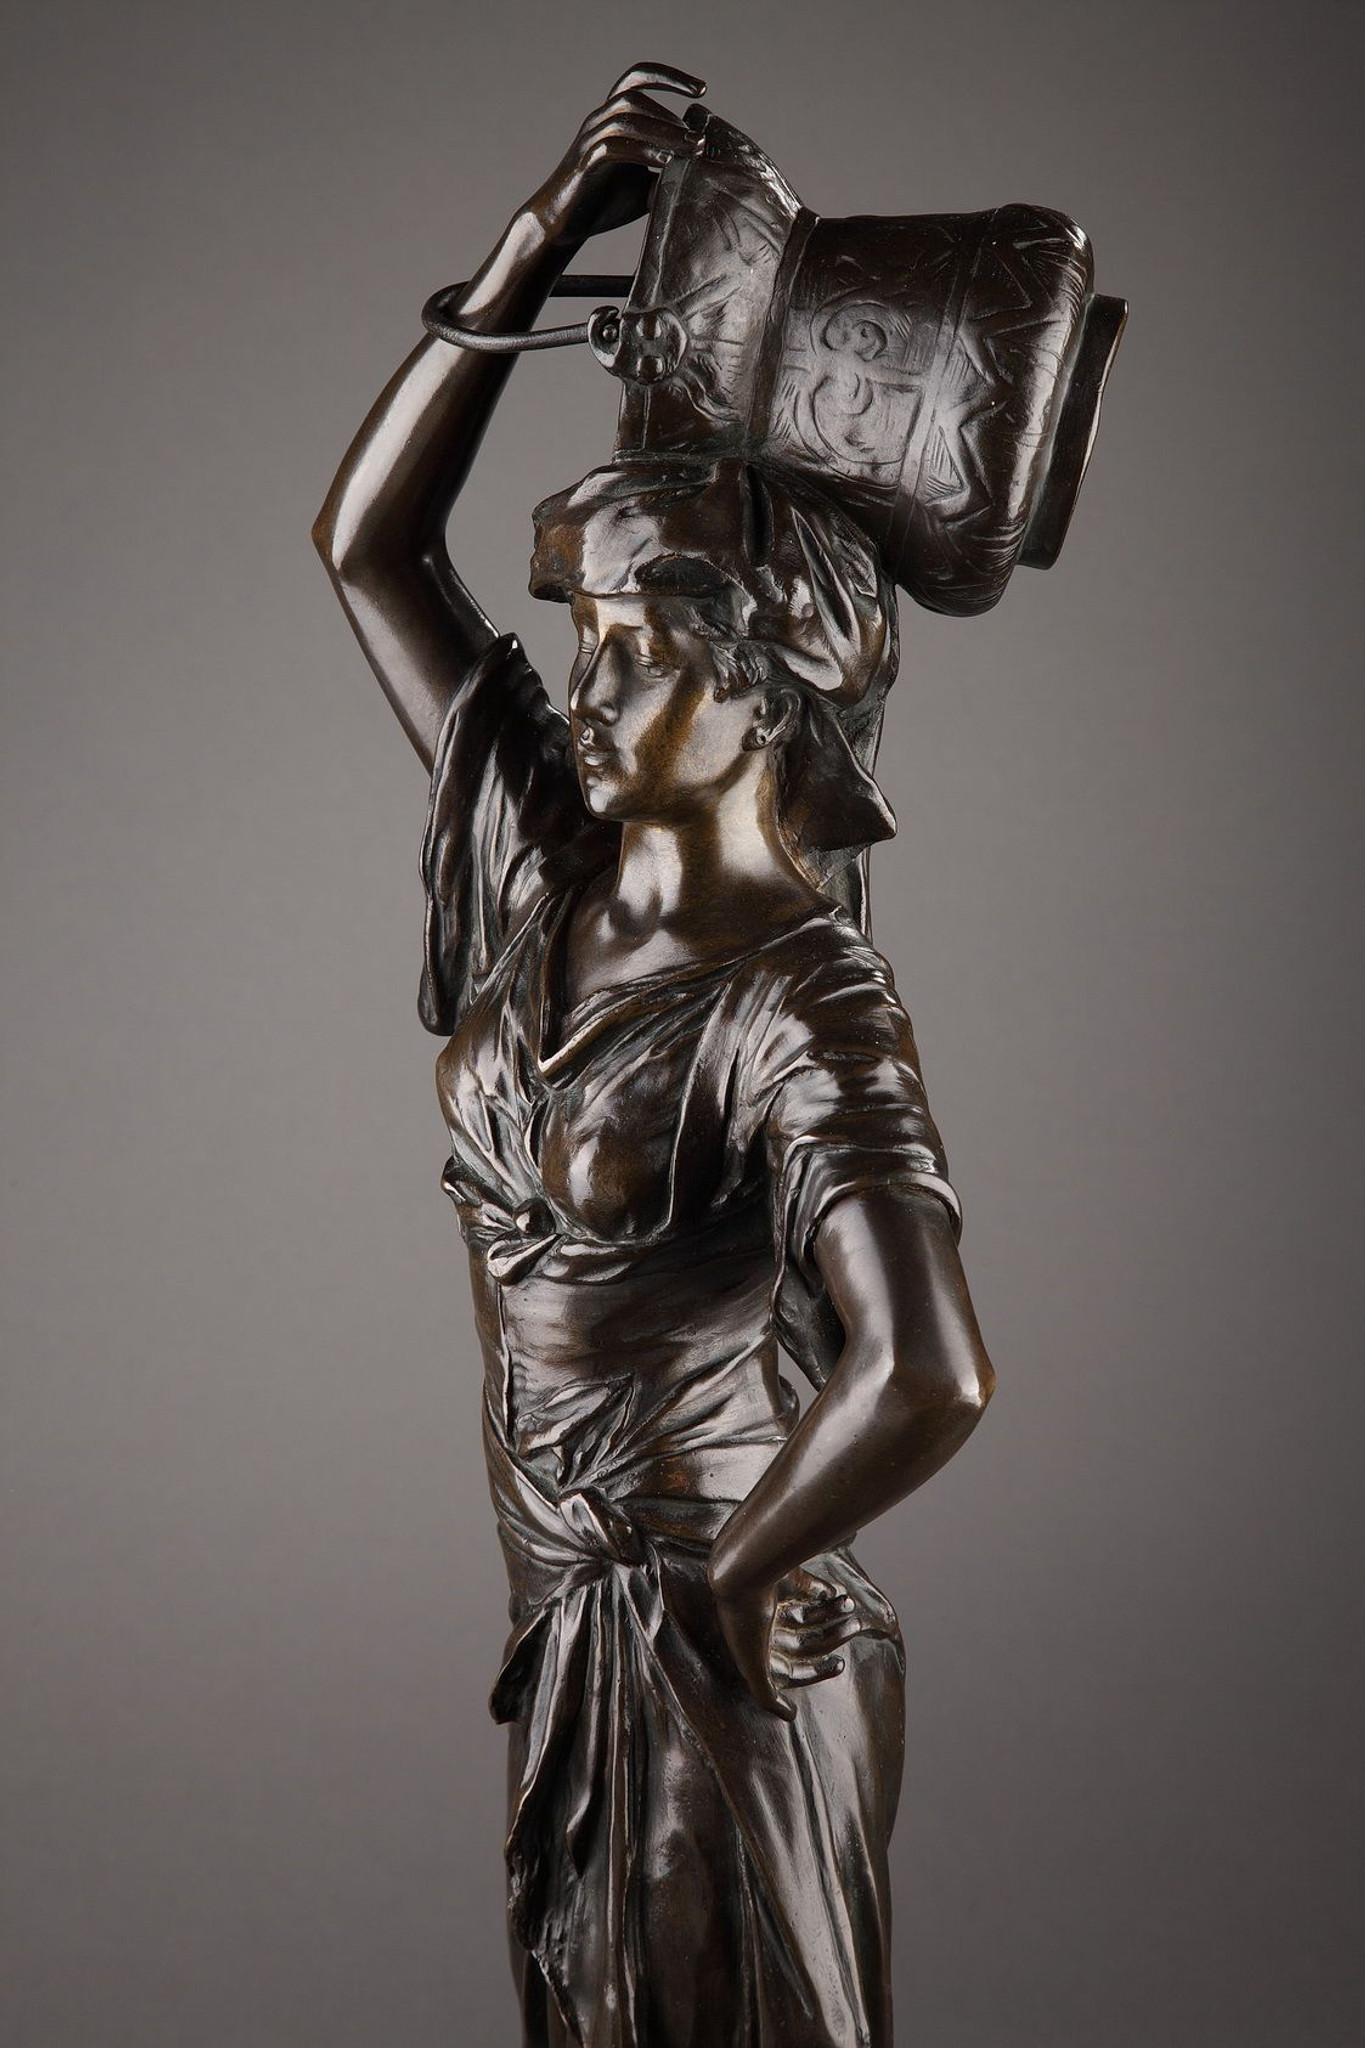 Sculpture en bronze patiné "Vers la source" d'Édouard Drouot  (1859-1945)